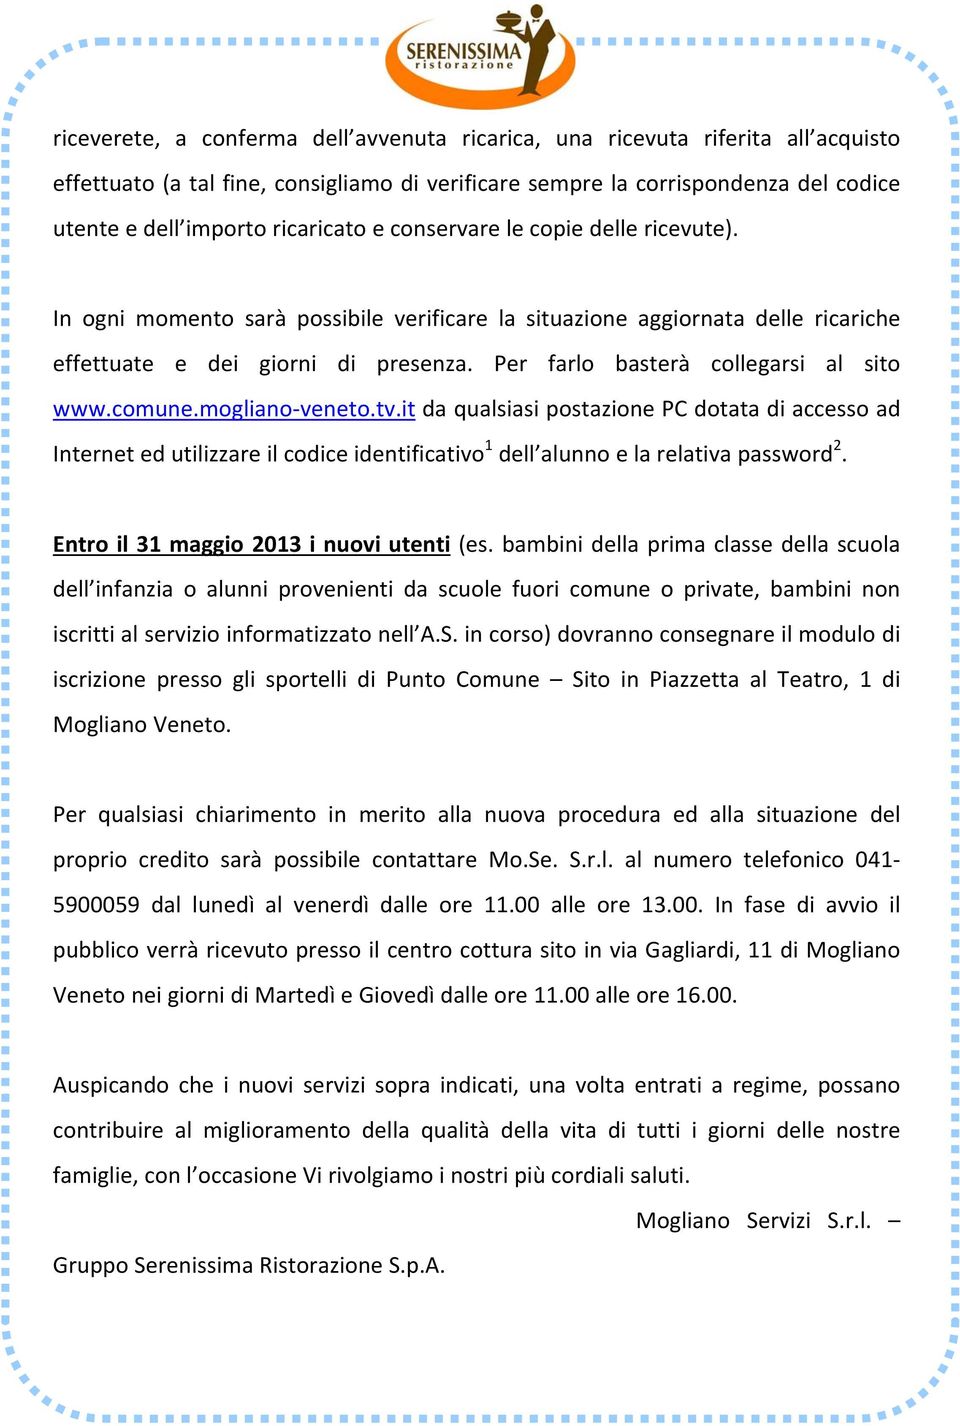 Per farlo basterà collegarsi al sito www.comune.mogliano veneto.tv.